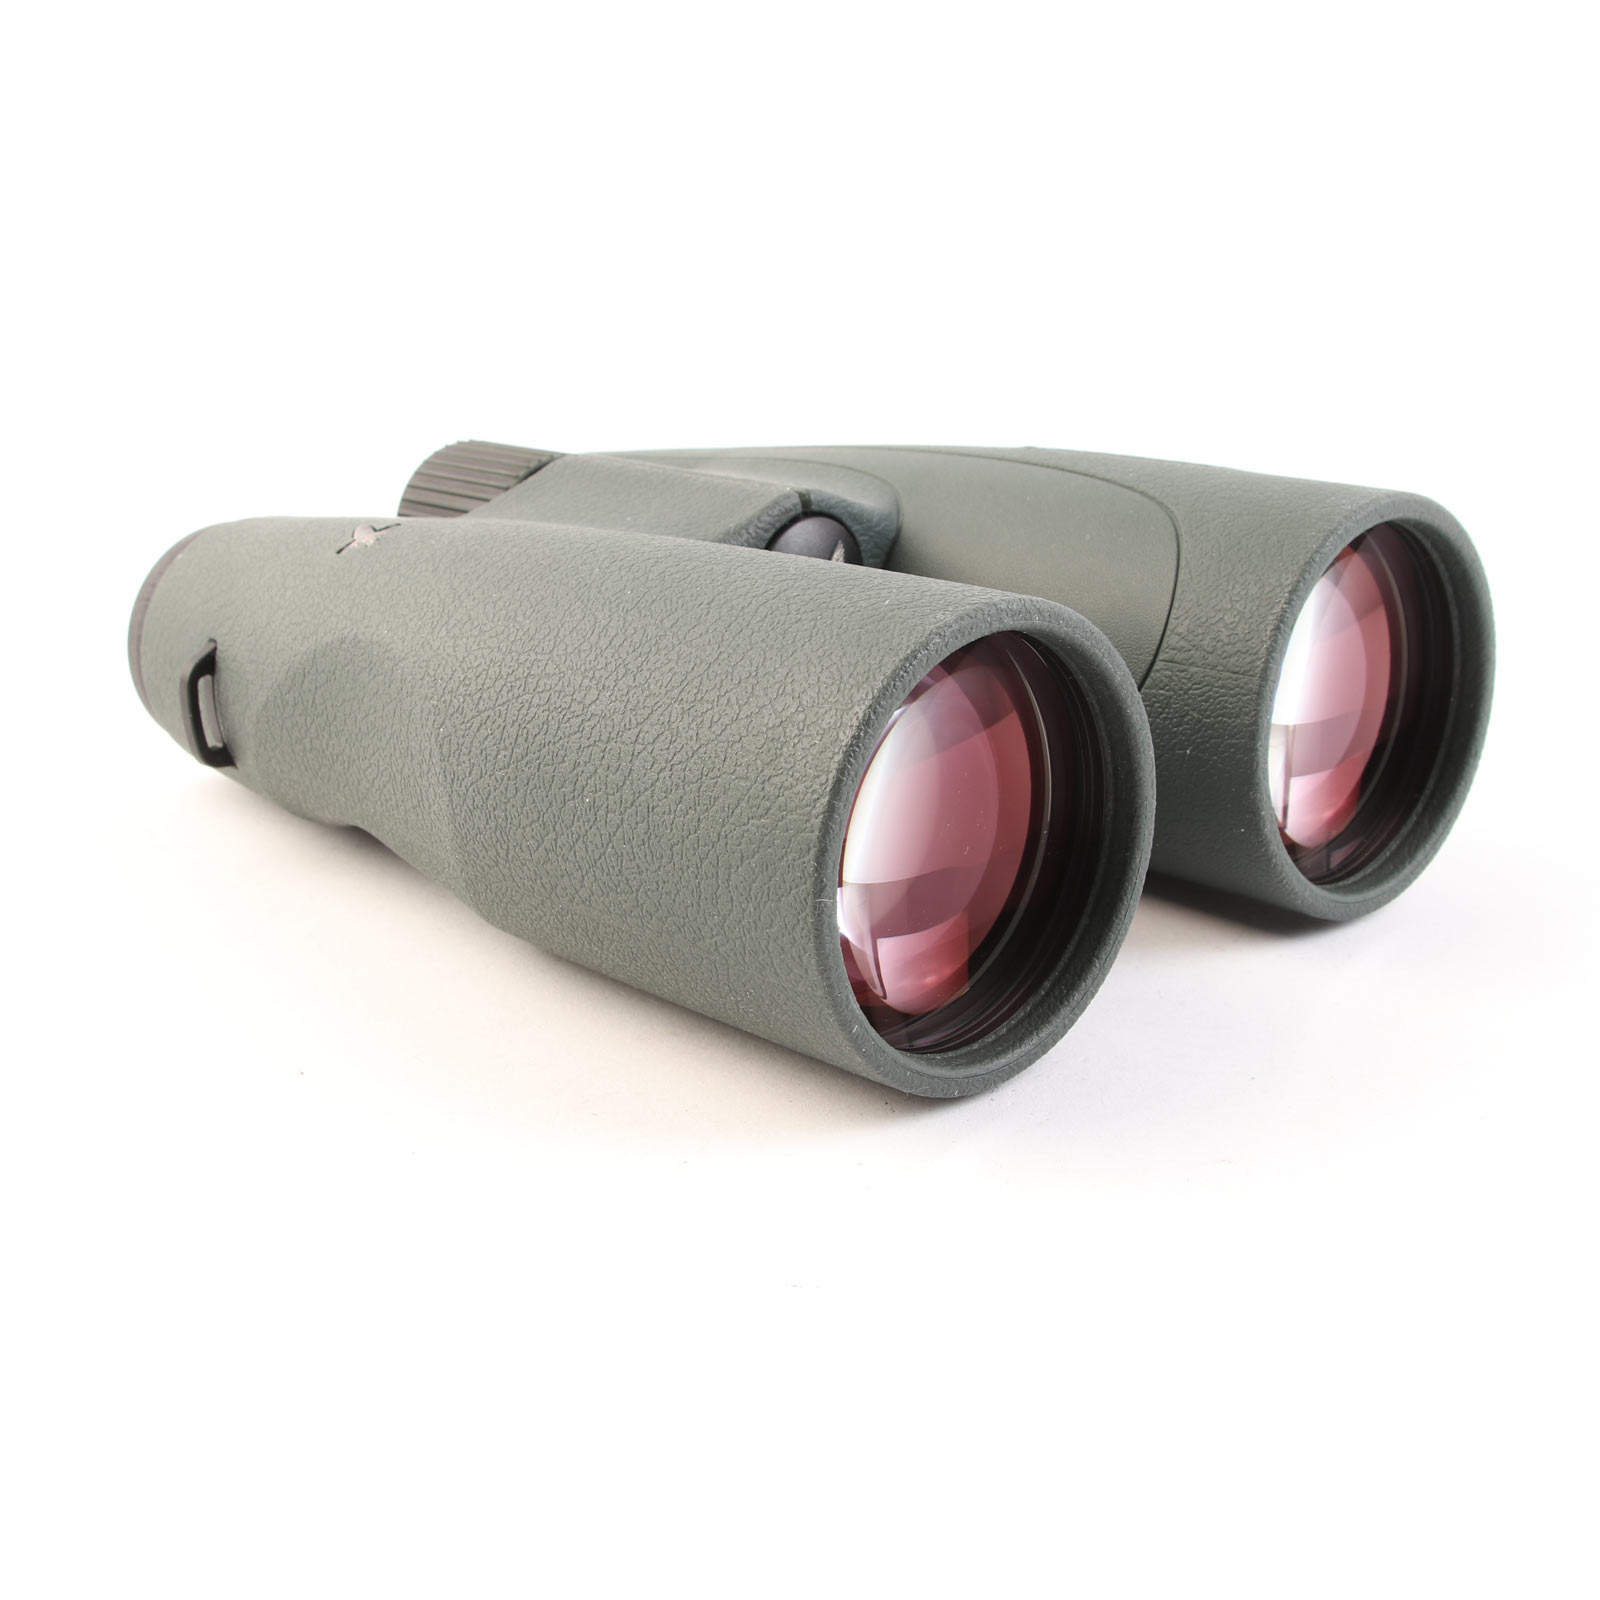 USED Swarovski SLC 10x56 Binoculars